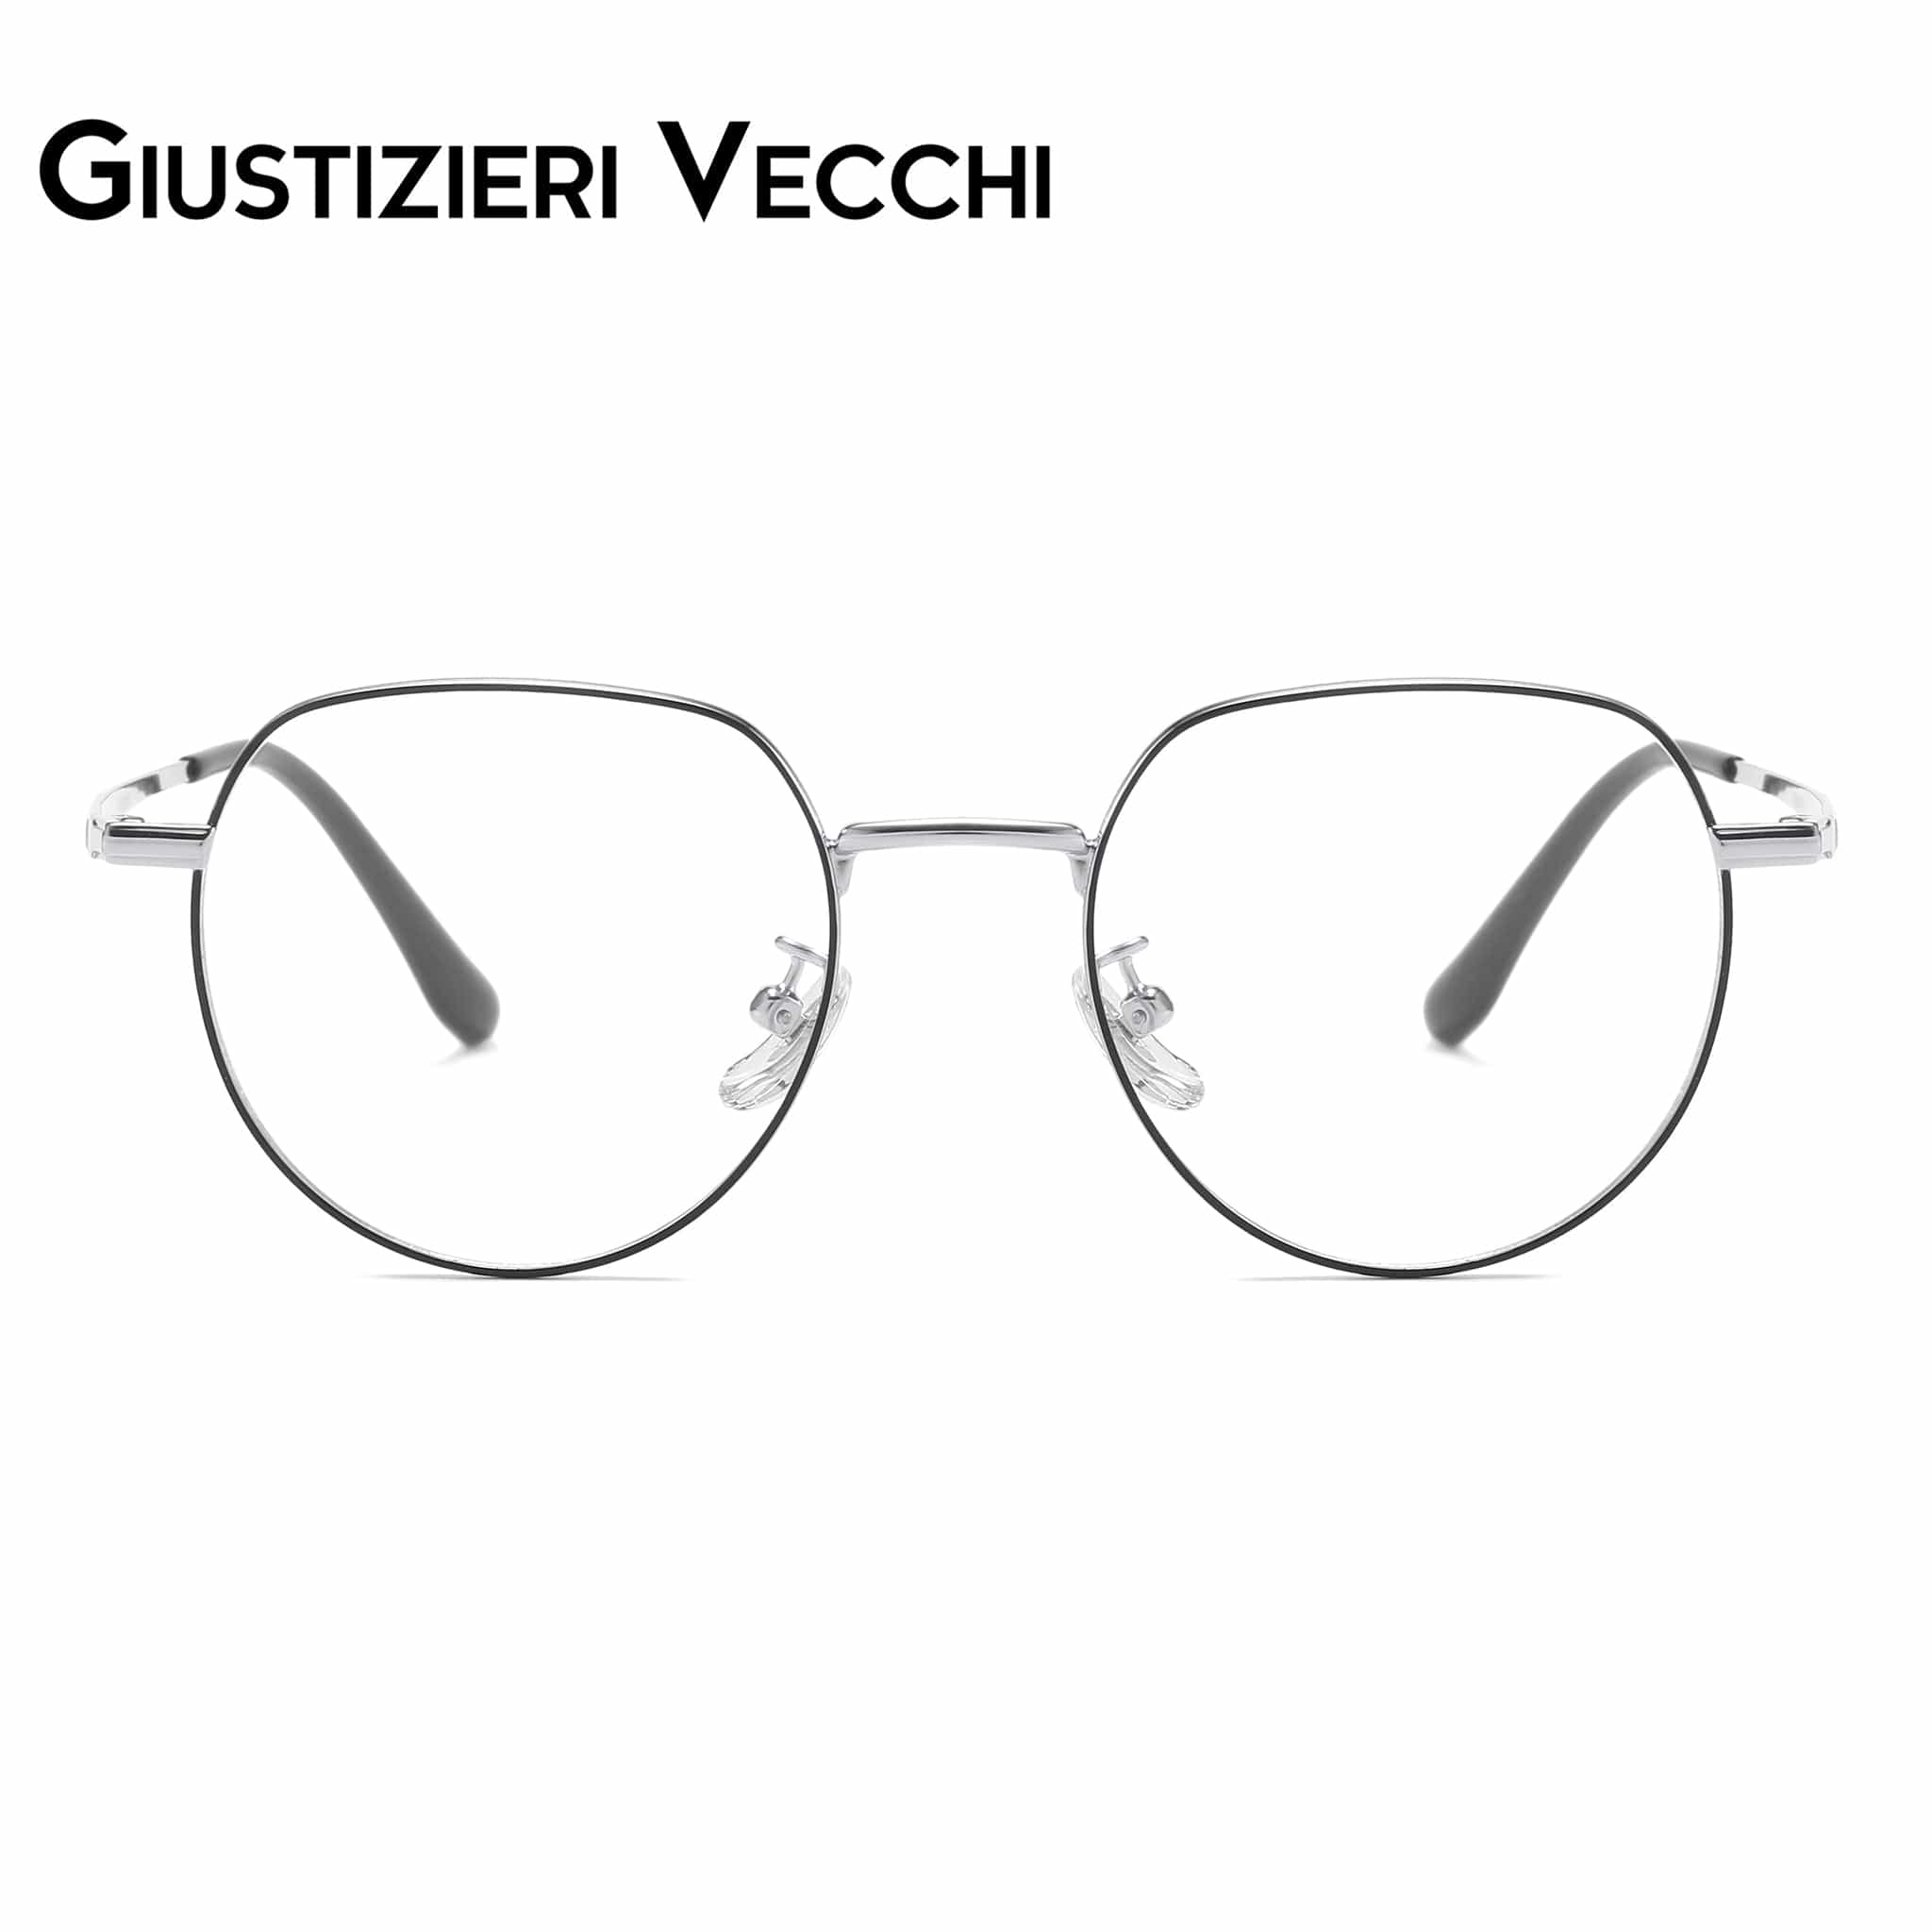 GIUSTIZIERI VECCHI Eyeglasses Small / Black with Silver LunarTide Duo